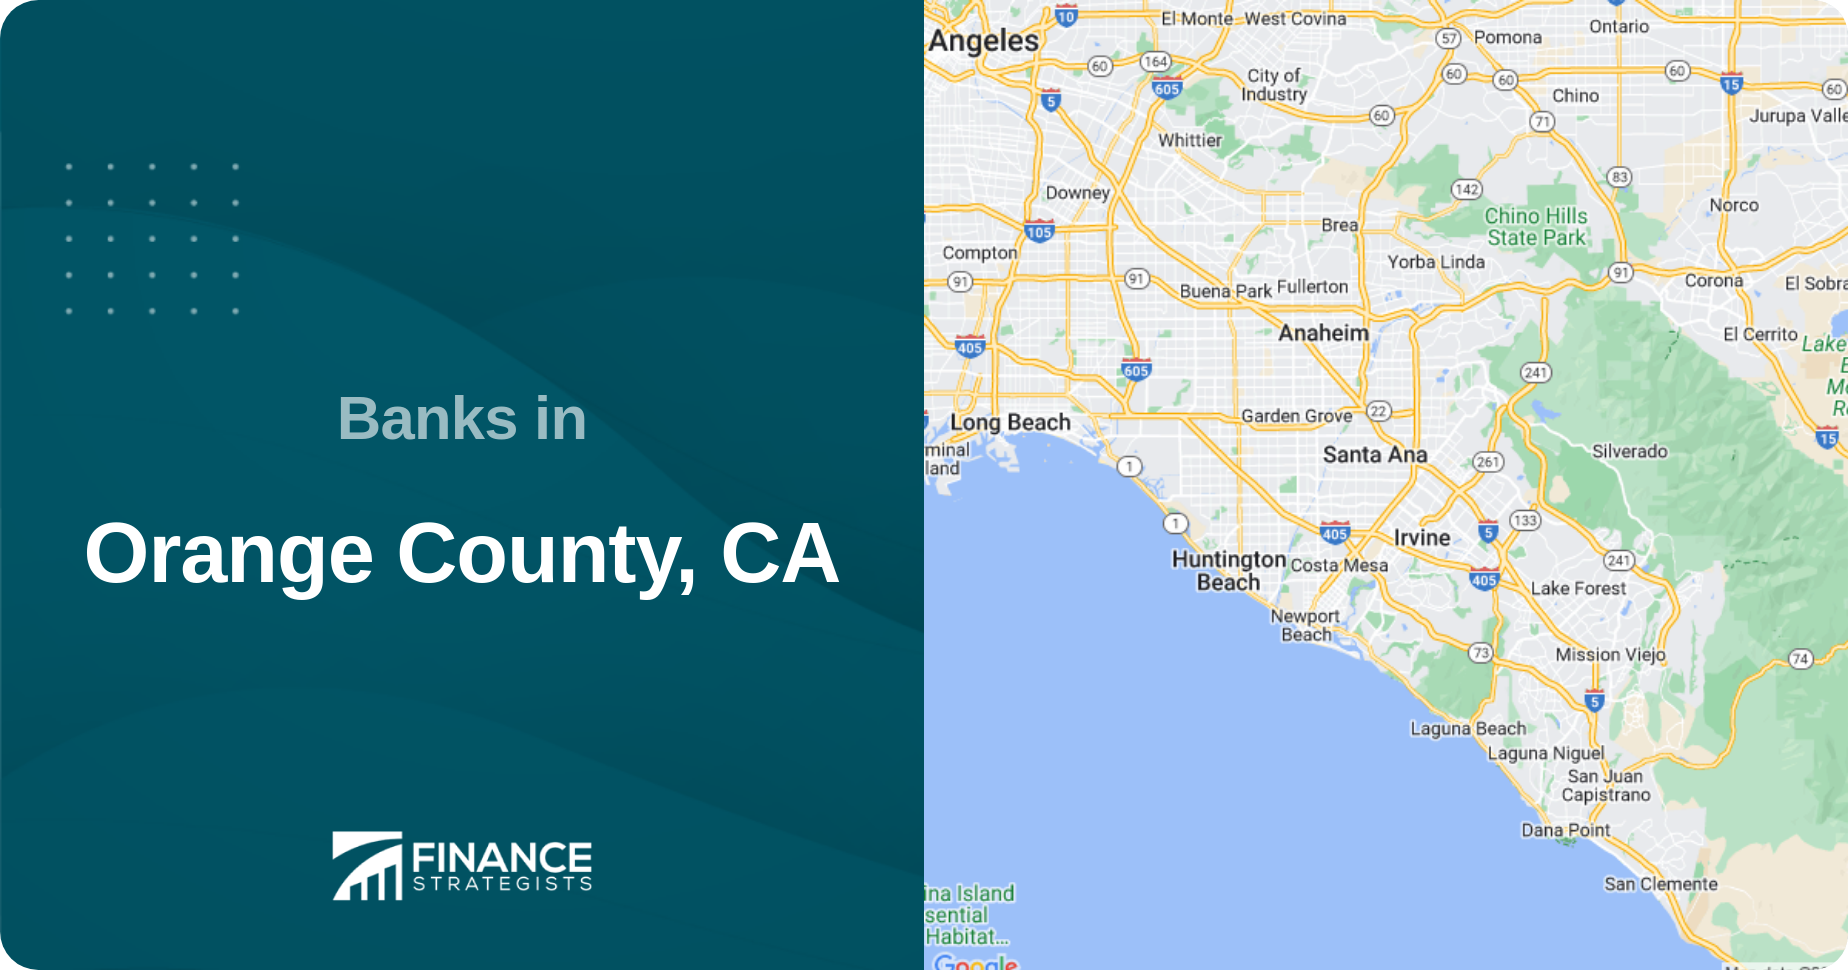 Banks in Orange County, CA